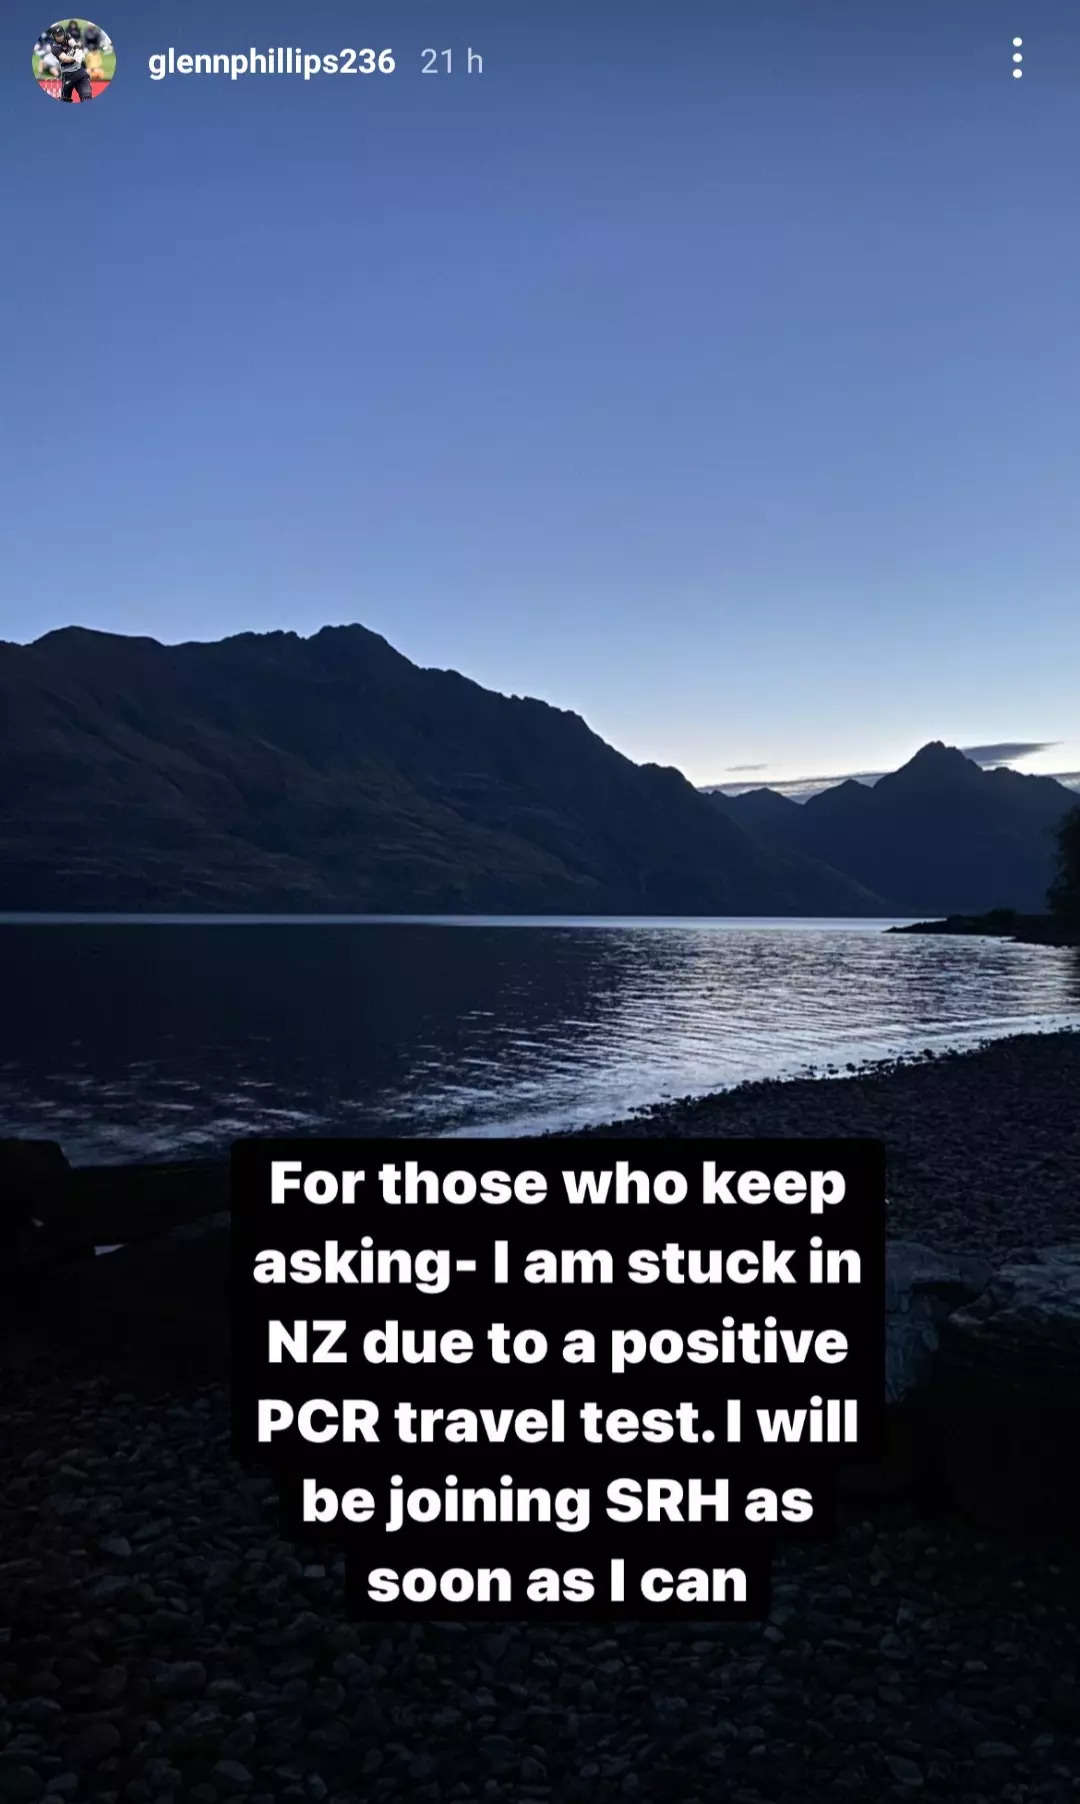 SRH39's Glenn Phillips still stuck in New Zealand photo Instagram